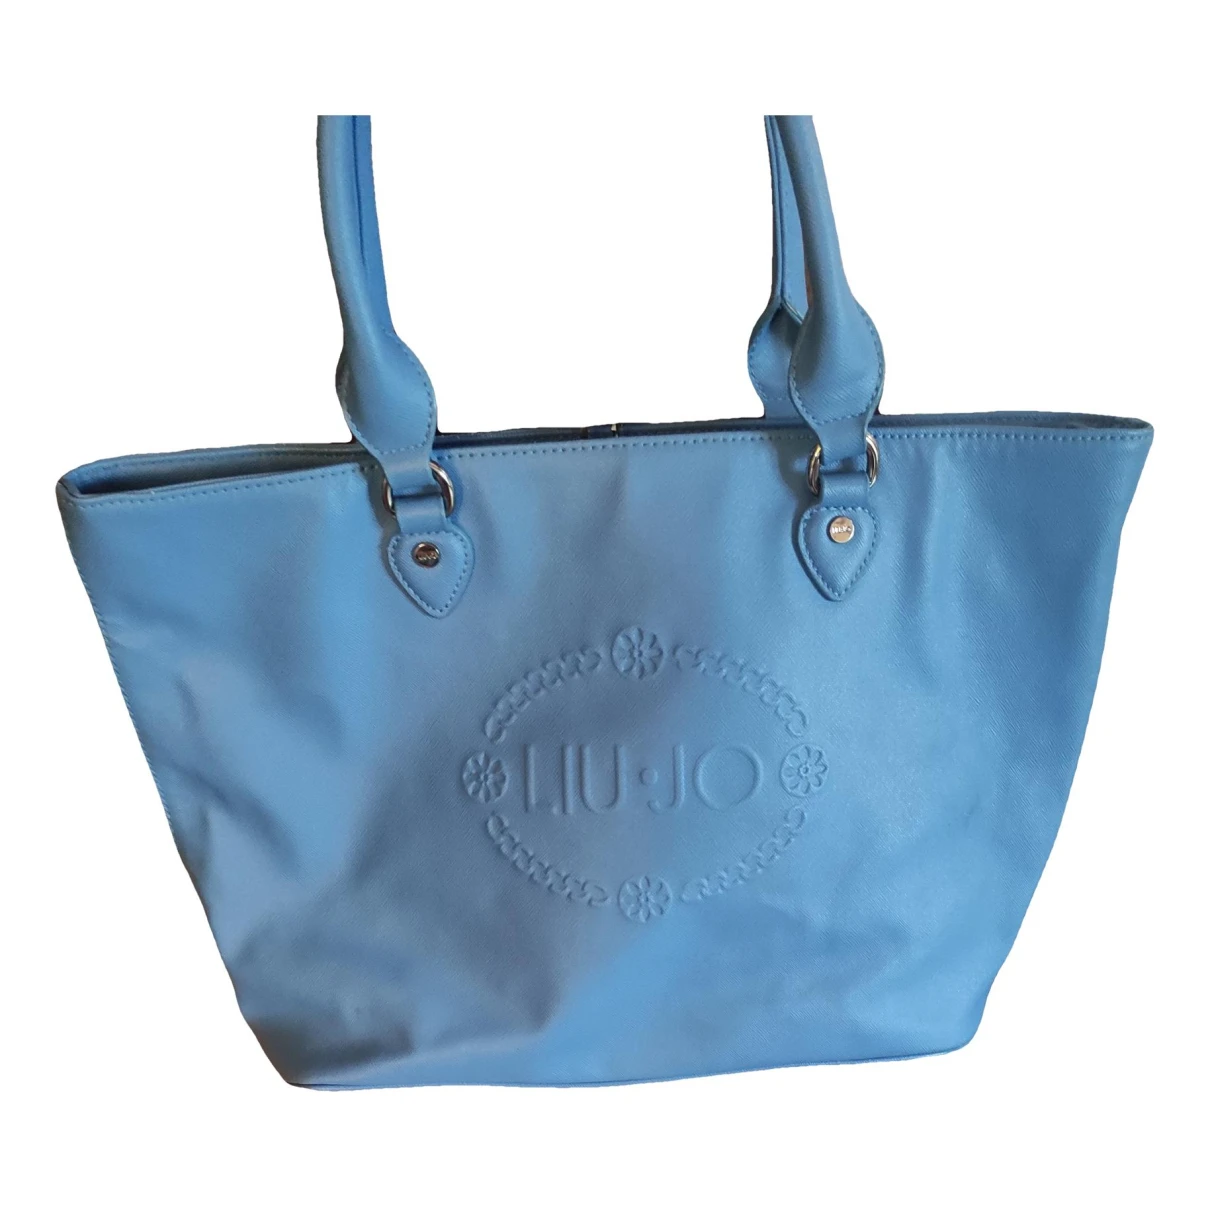 Pre-owned Liujo Vegan Leather Handbag In Blue